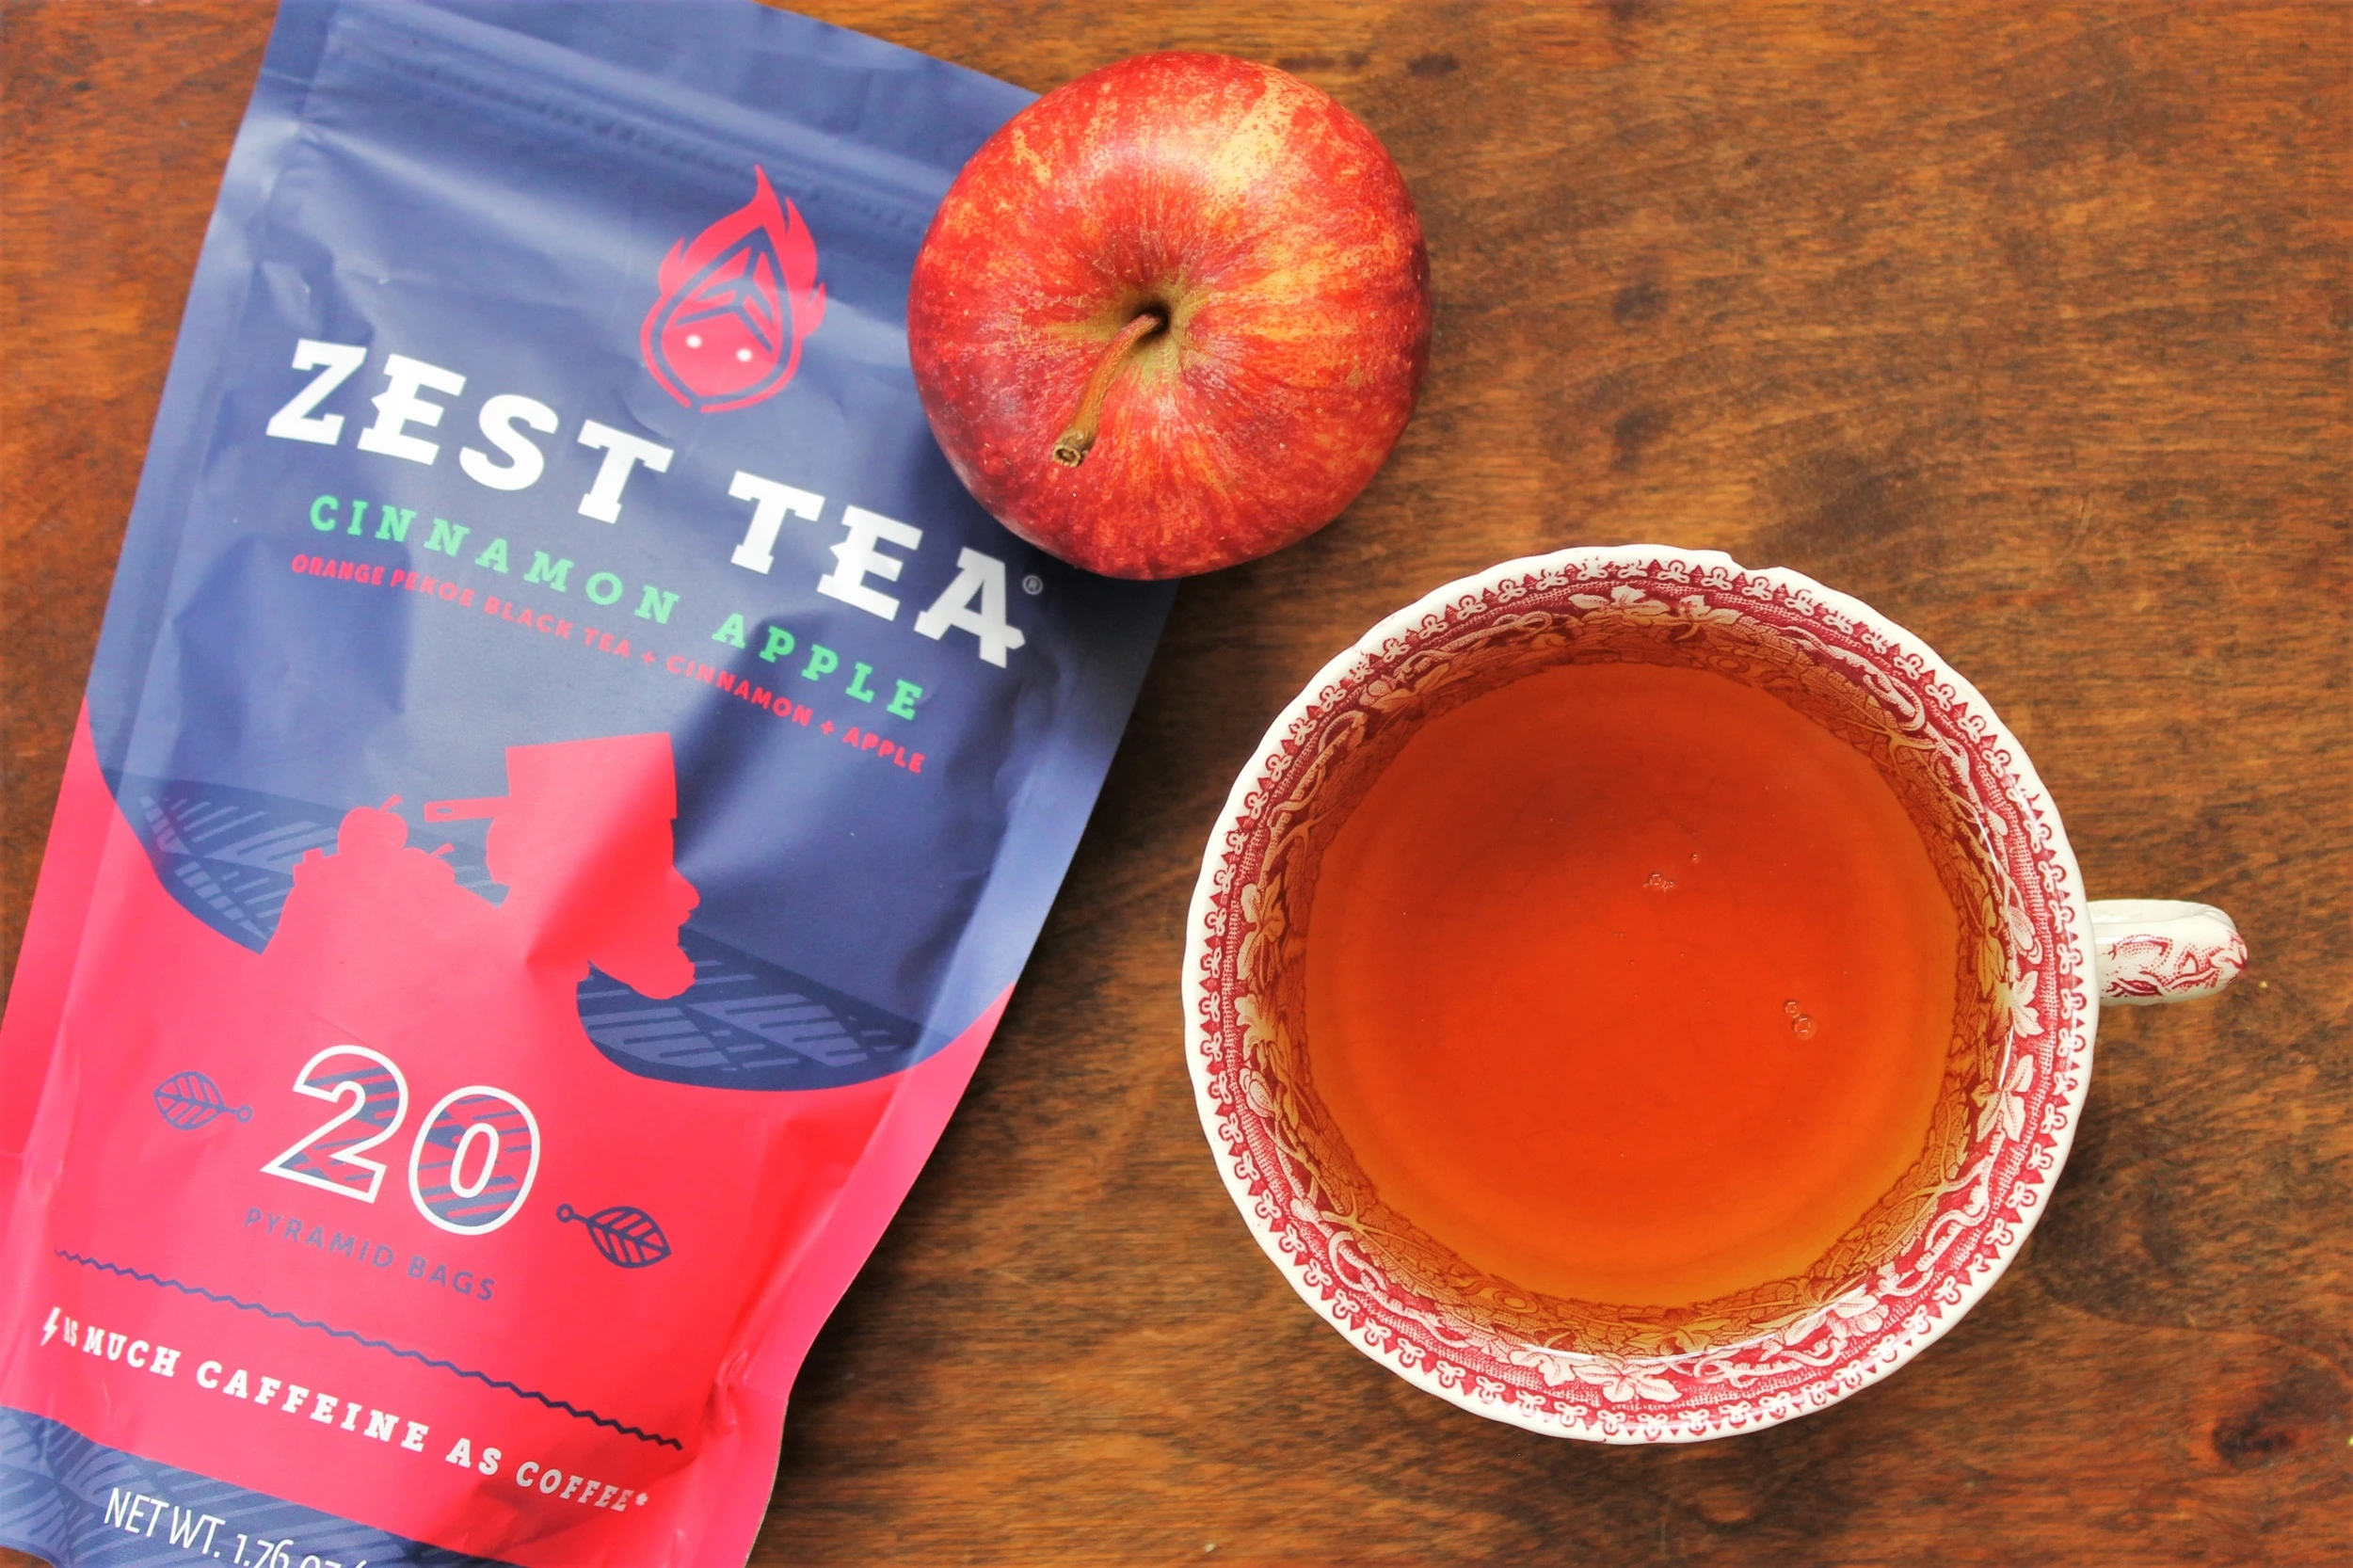 zest tea cinnamon apple tea review